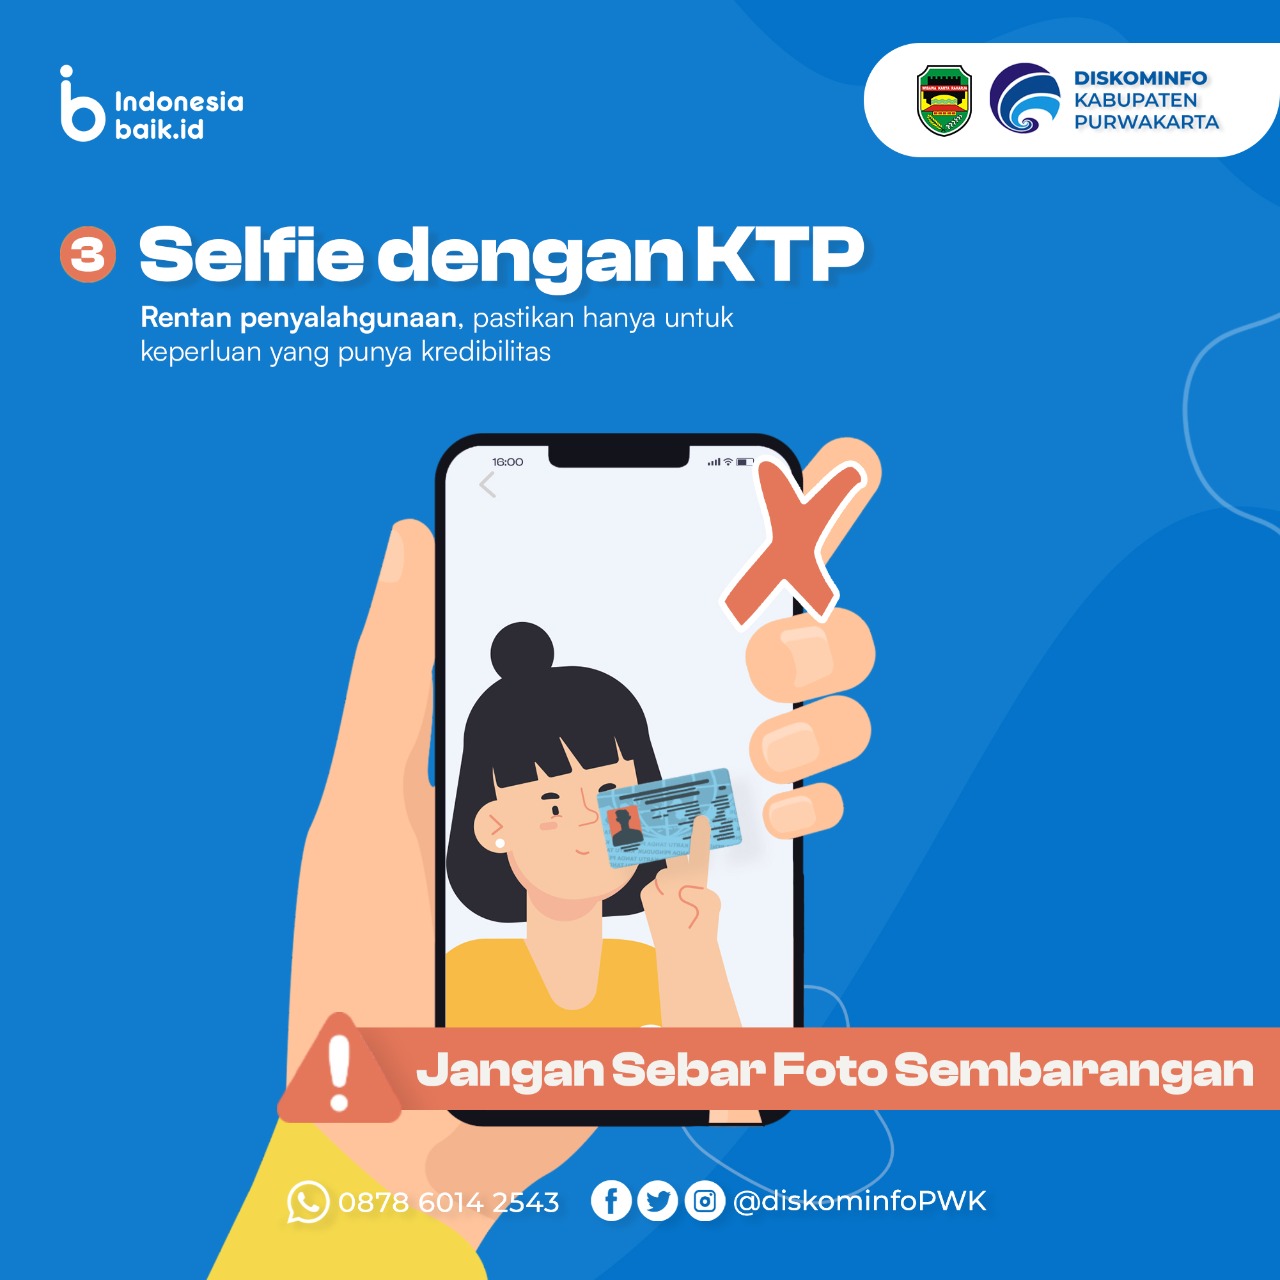 Selfie dengan KTP